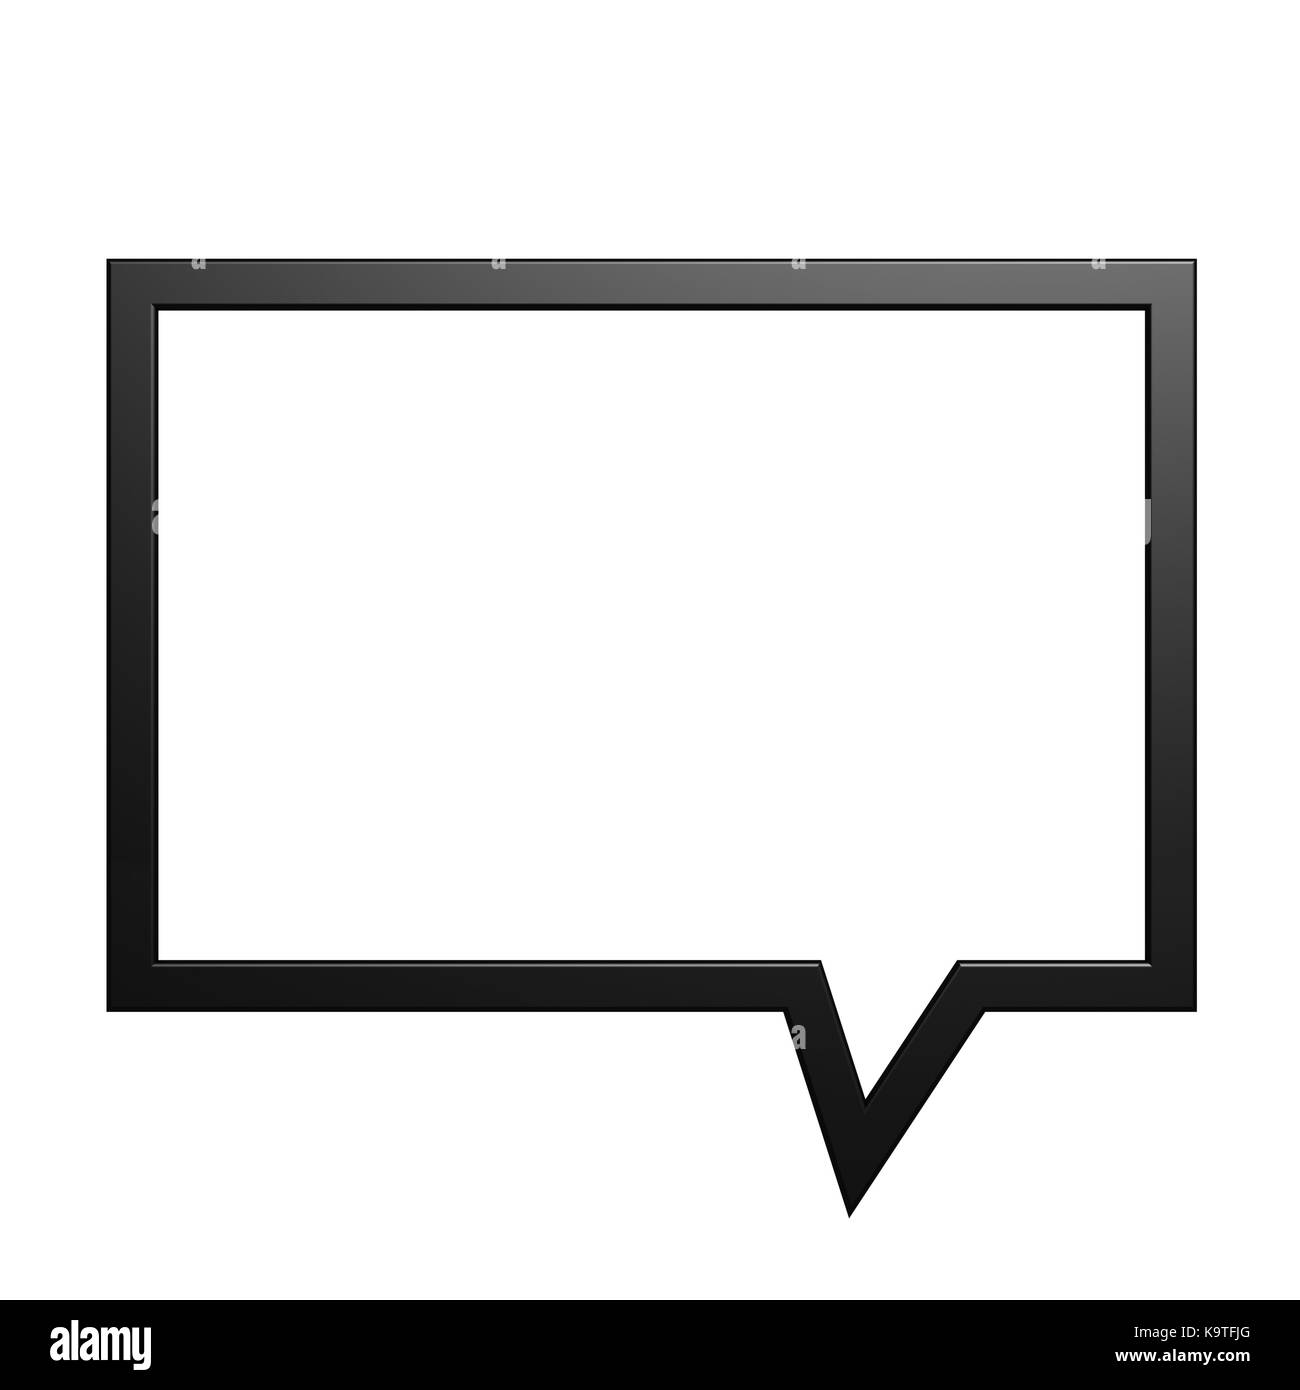 Boite de dialogue Banque d'images noir et blanc - Alamy